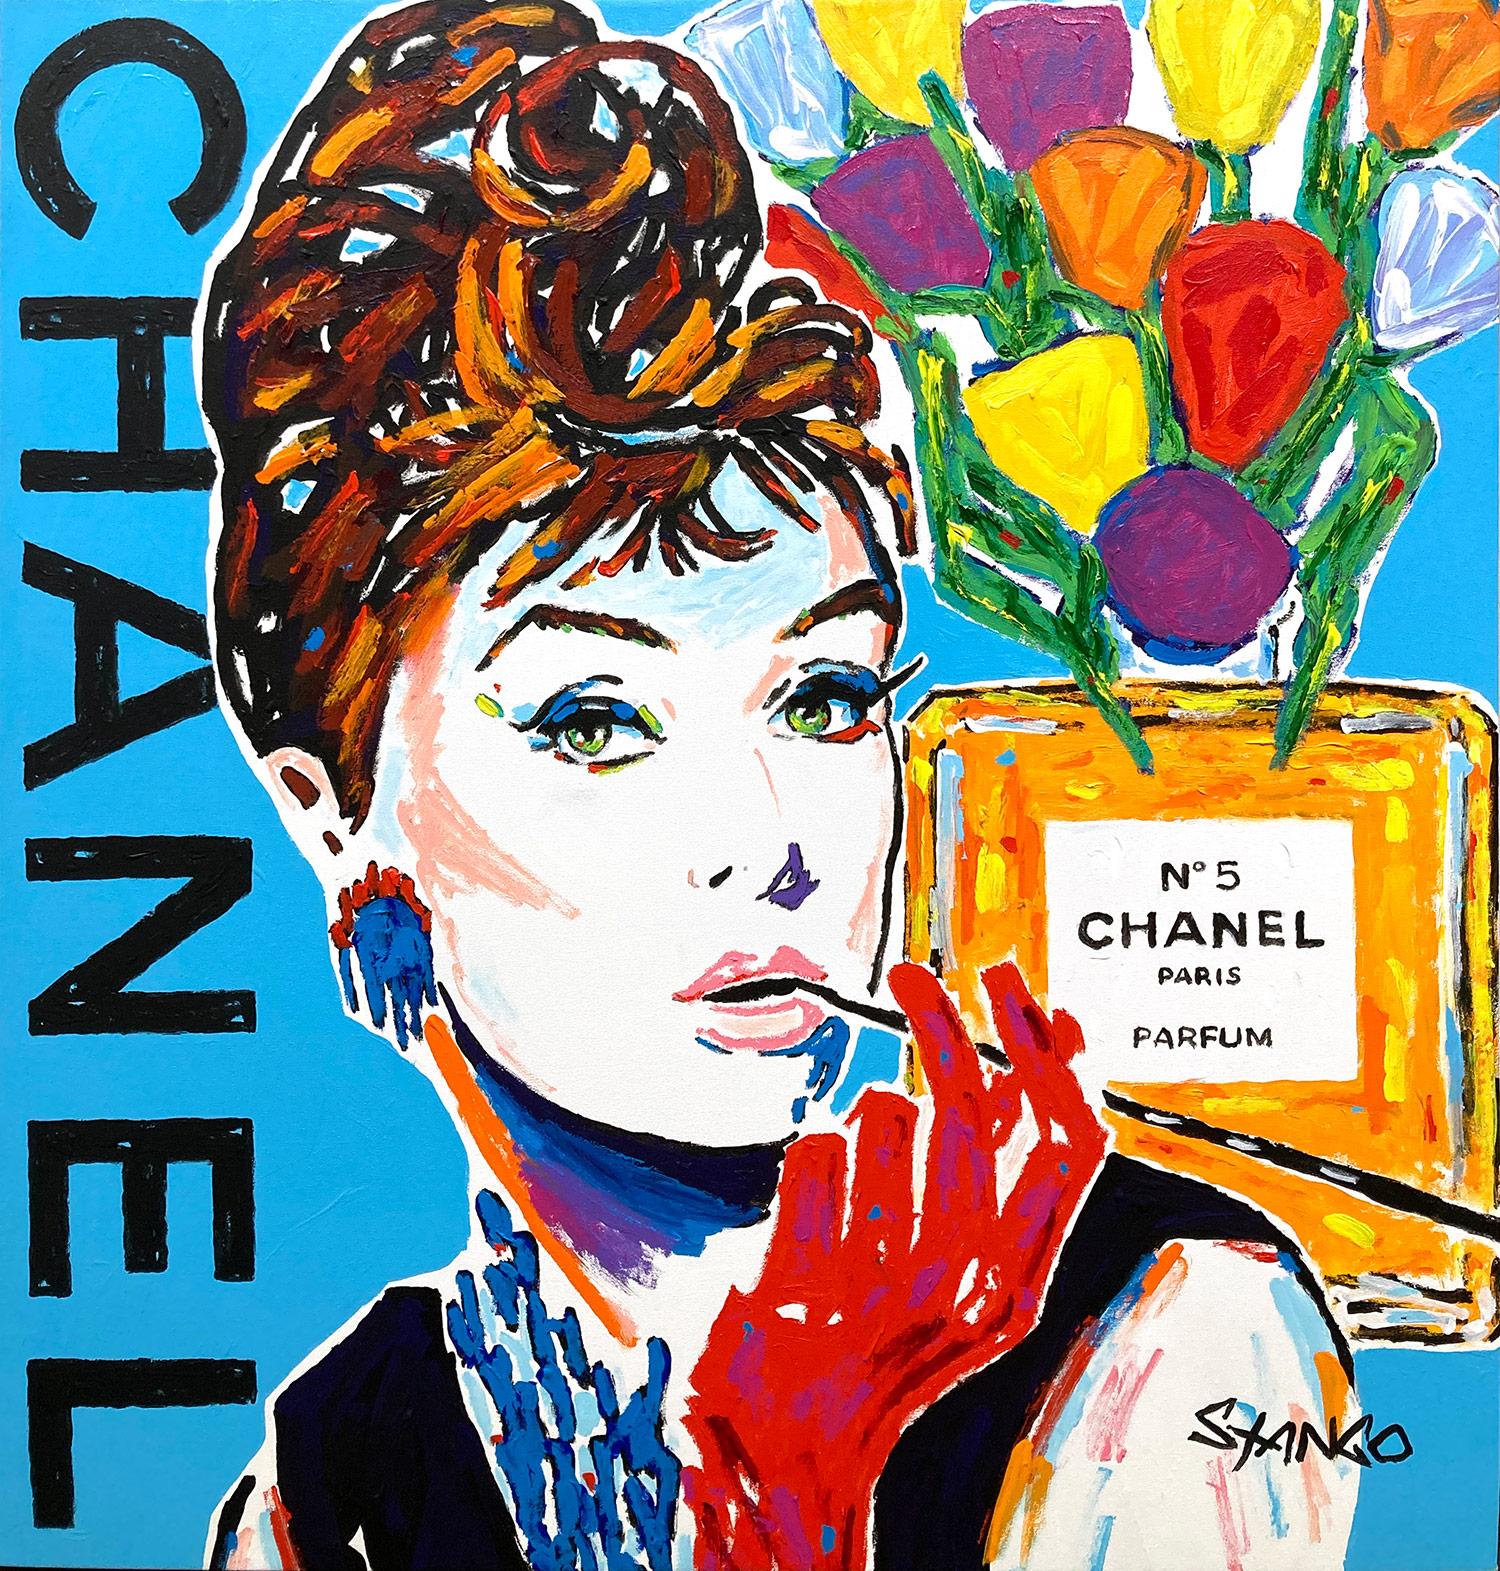 Abstract Painting John Stango - "Audrey Chanel Blue" Fleurs et Audrey Hepburn Peinture acrylique sur toile Pop Art